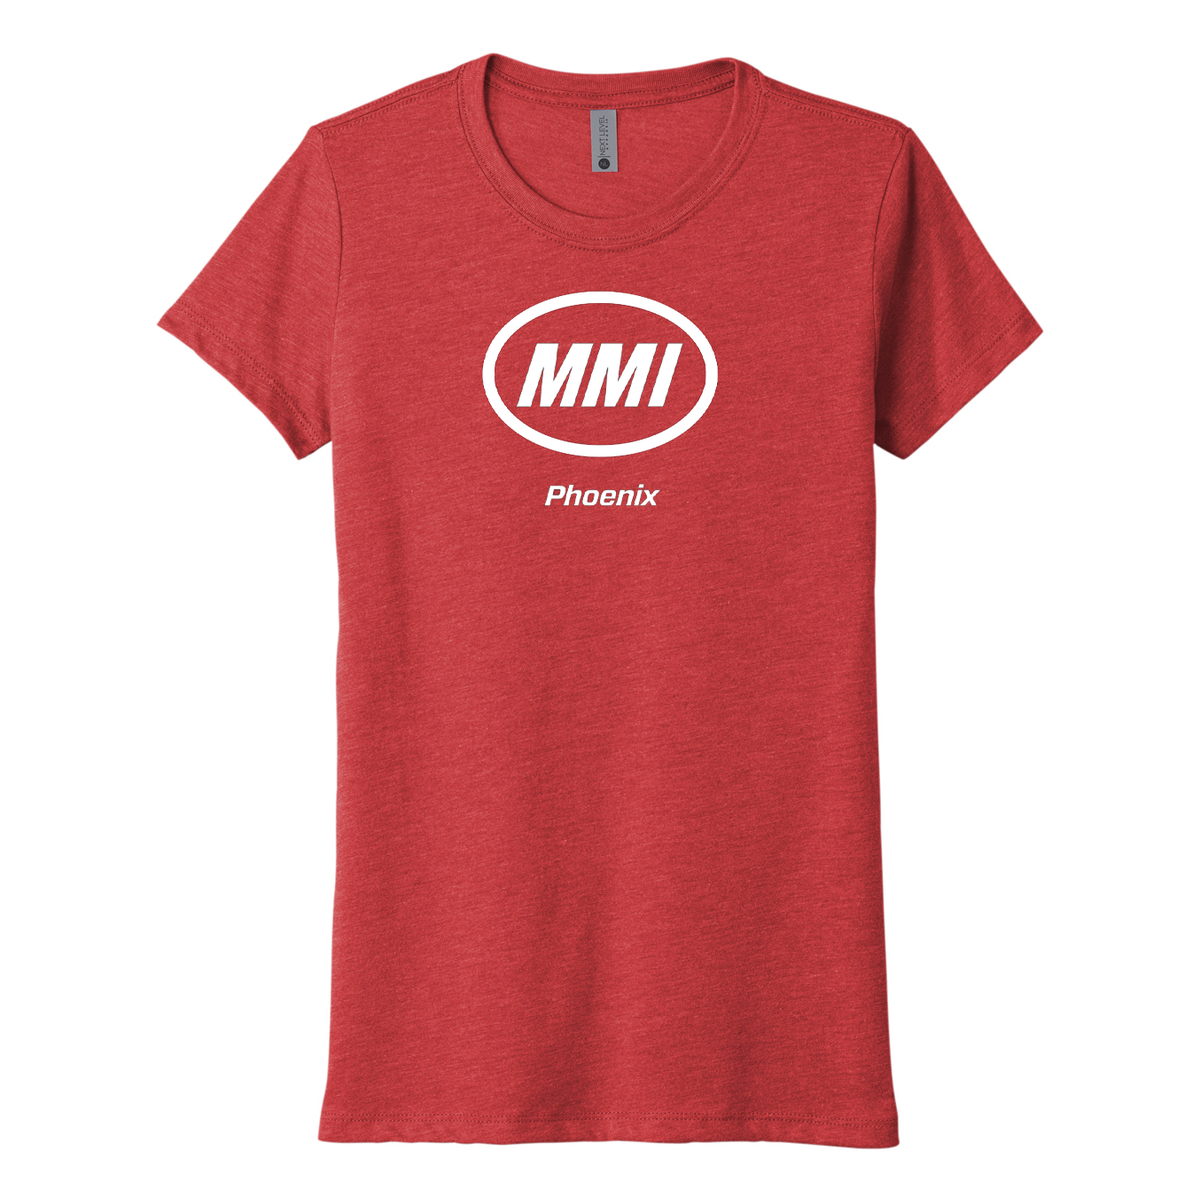 MMI Phoenix Campus Womens T-Shirt